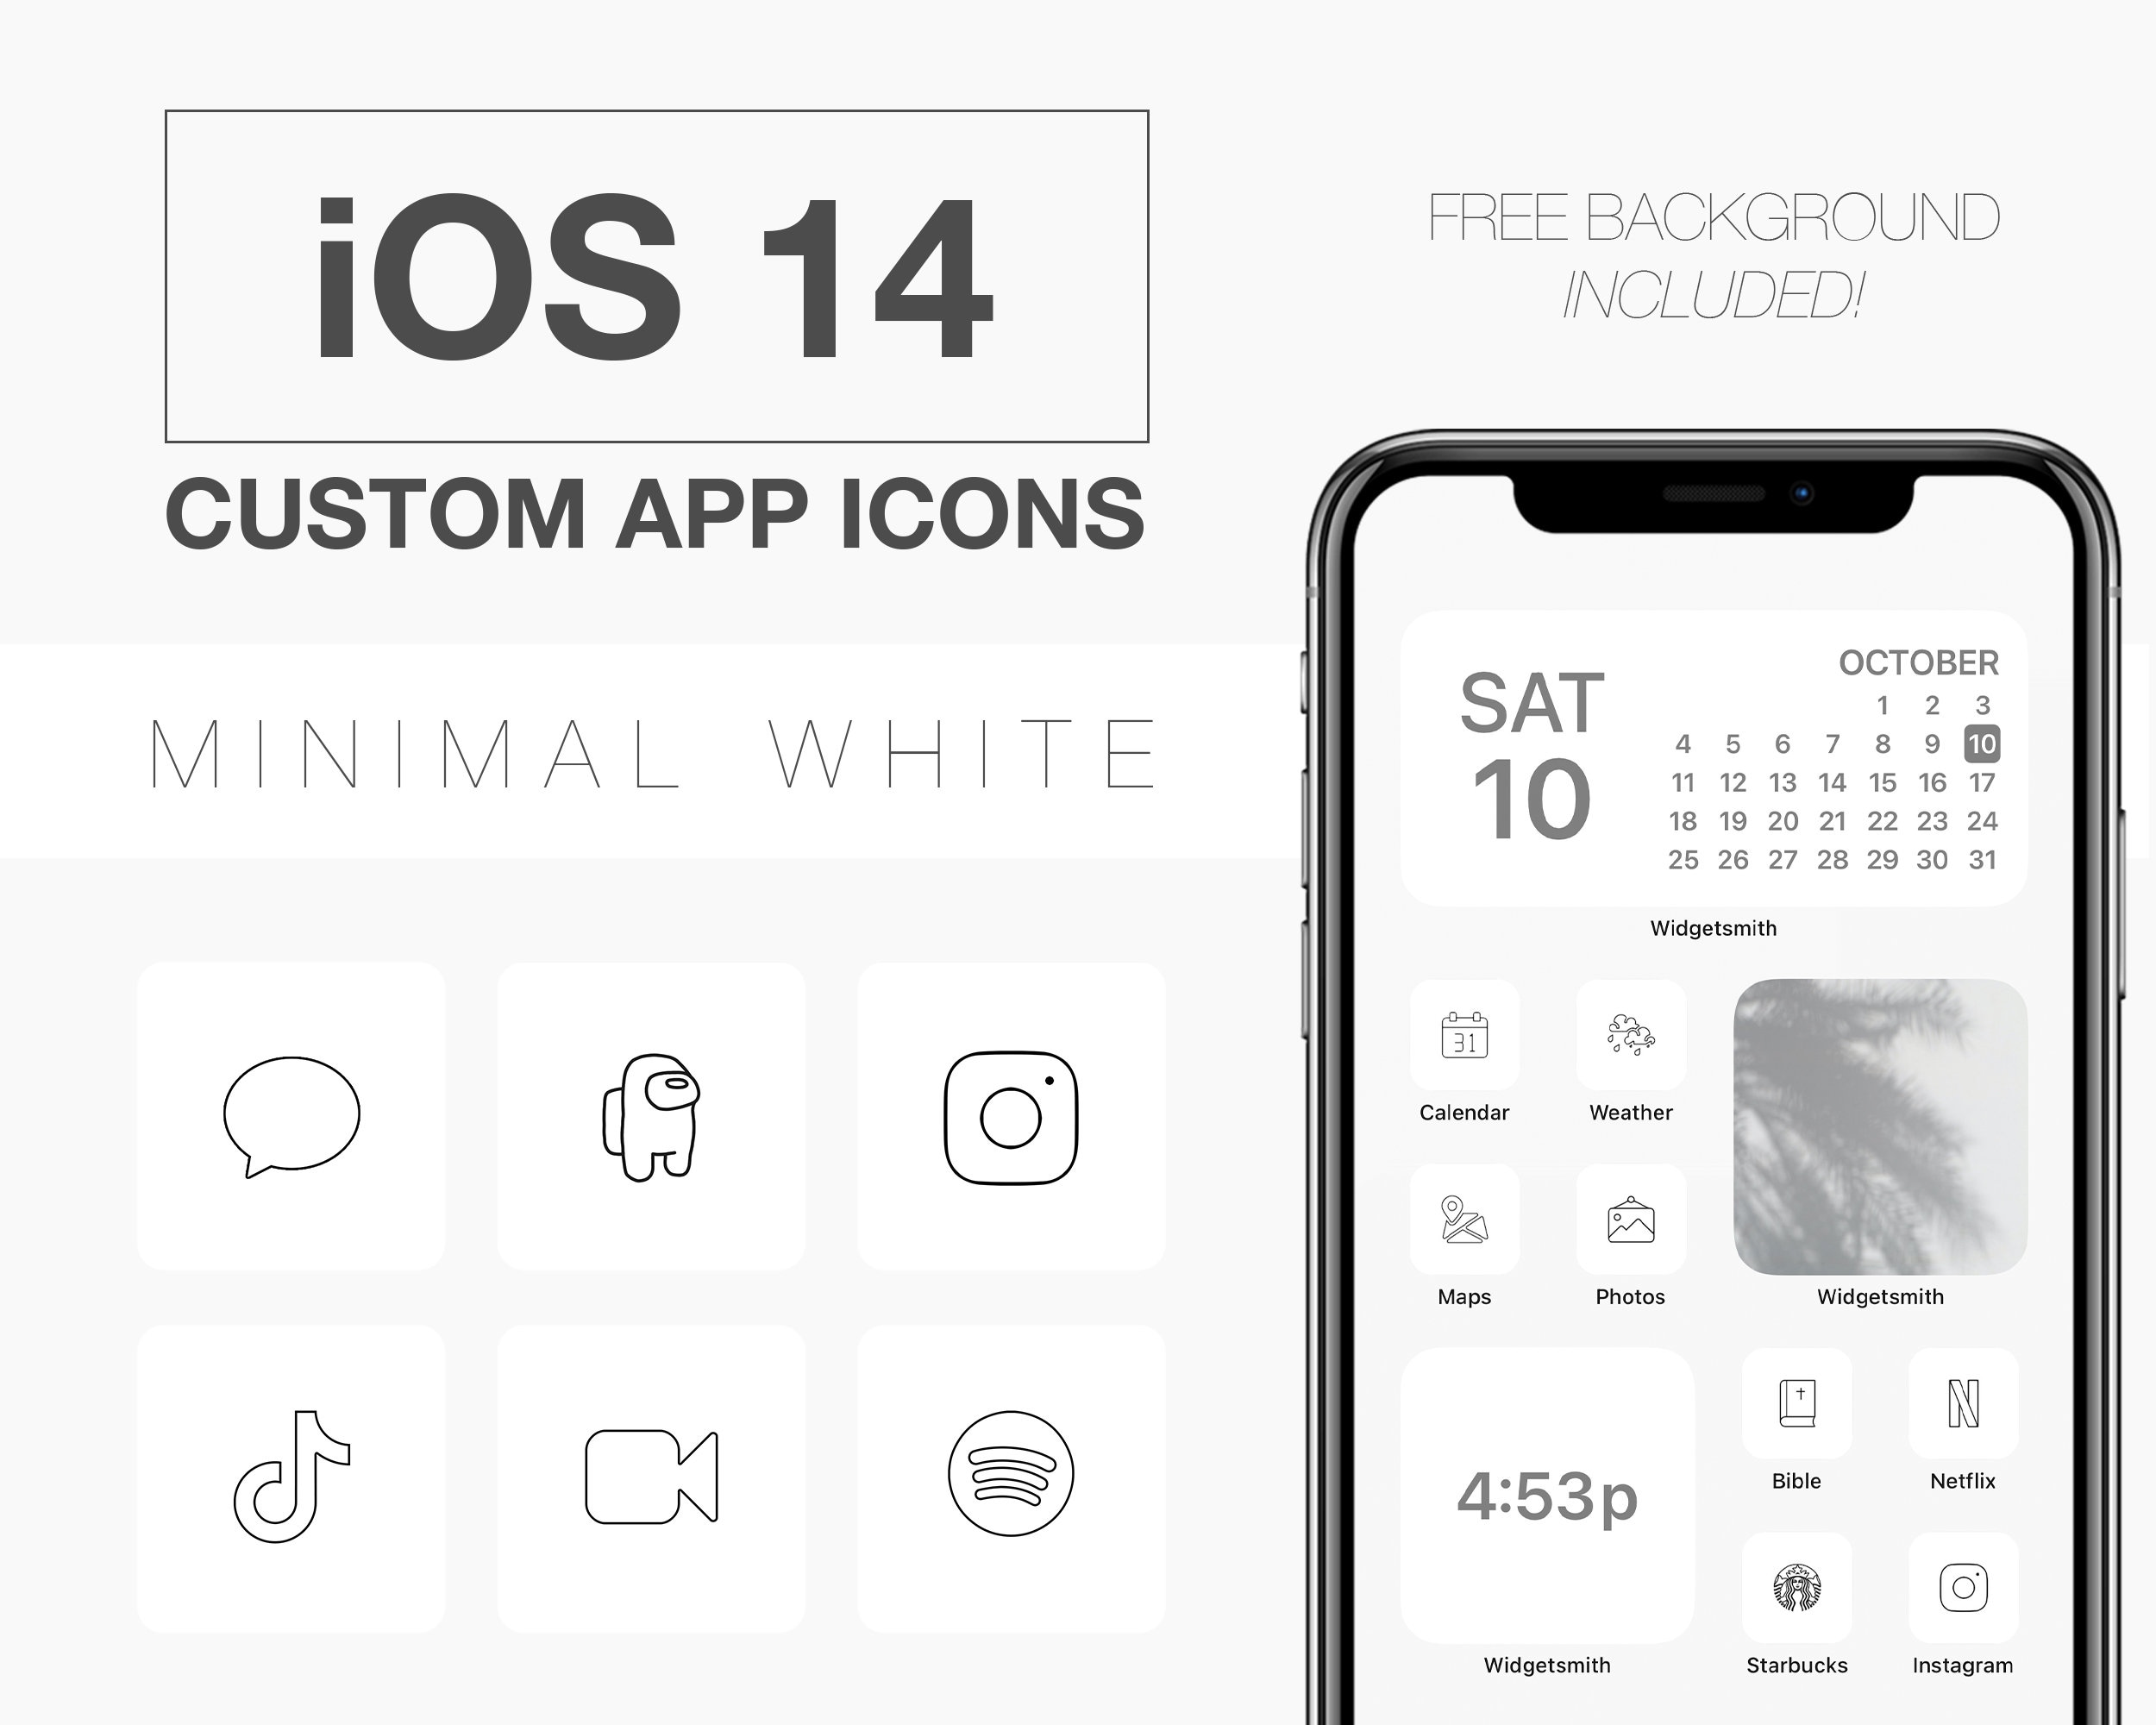 Biểu tượng IOS 14 đang được nhiều người yêu thích vì thiết kế đơn giản, tinh tế và ấn tượng. Nếu bạn muốn tìm hiểu thêm về biểu tượng này, hãy xem hình ảnh liên quan đến từ khóa này để khám phá những tính năng độc đáo và ấn tượng của IOS 